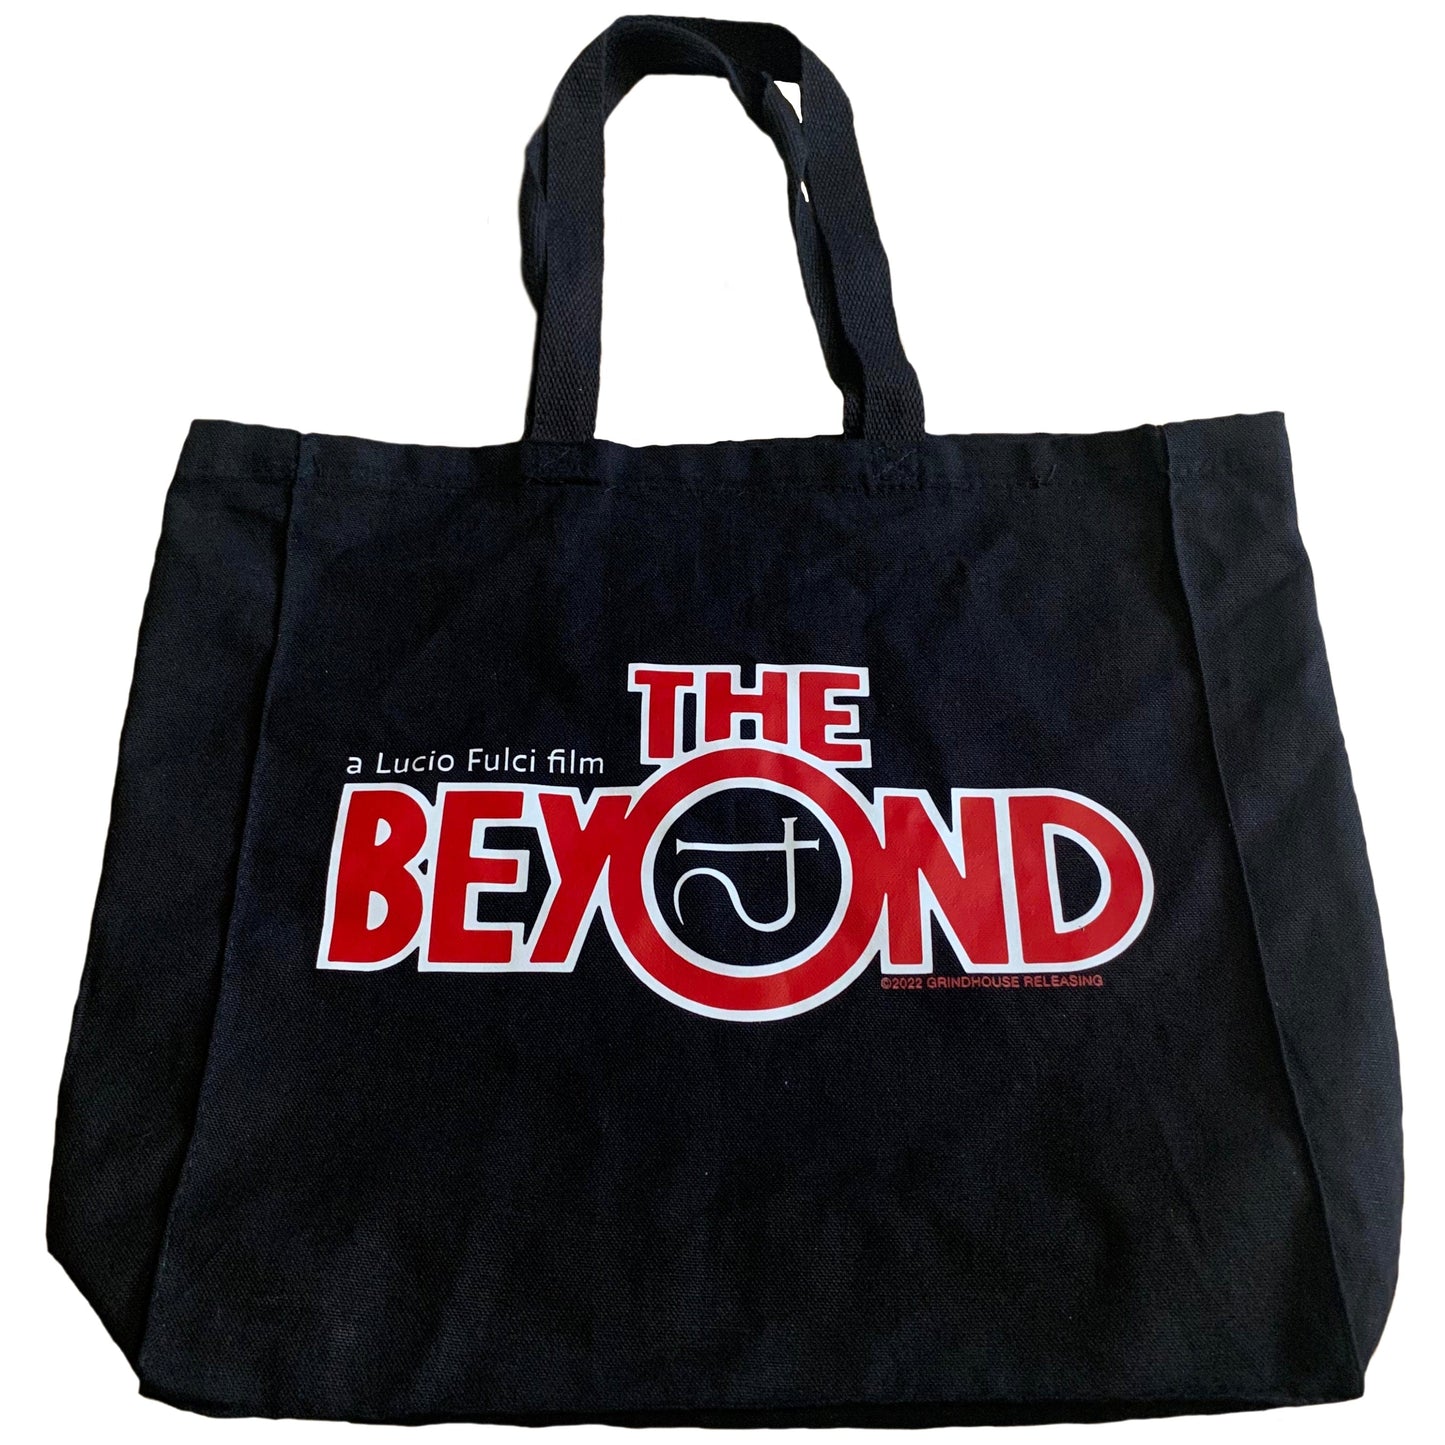 THE BEYOND Tote Bag